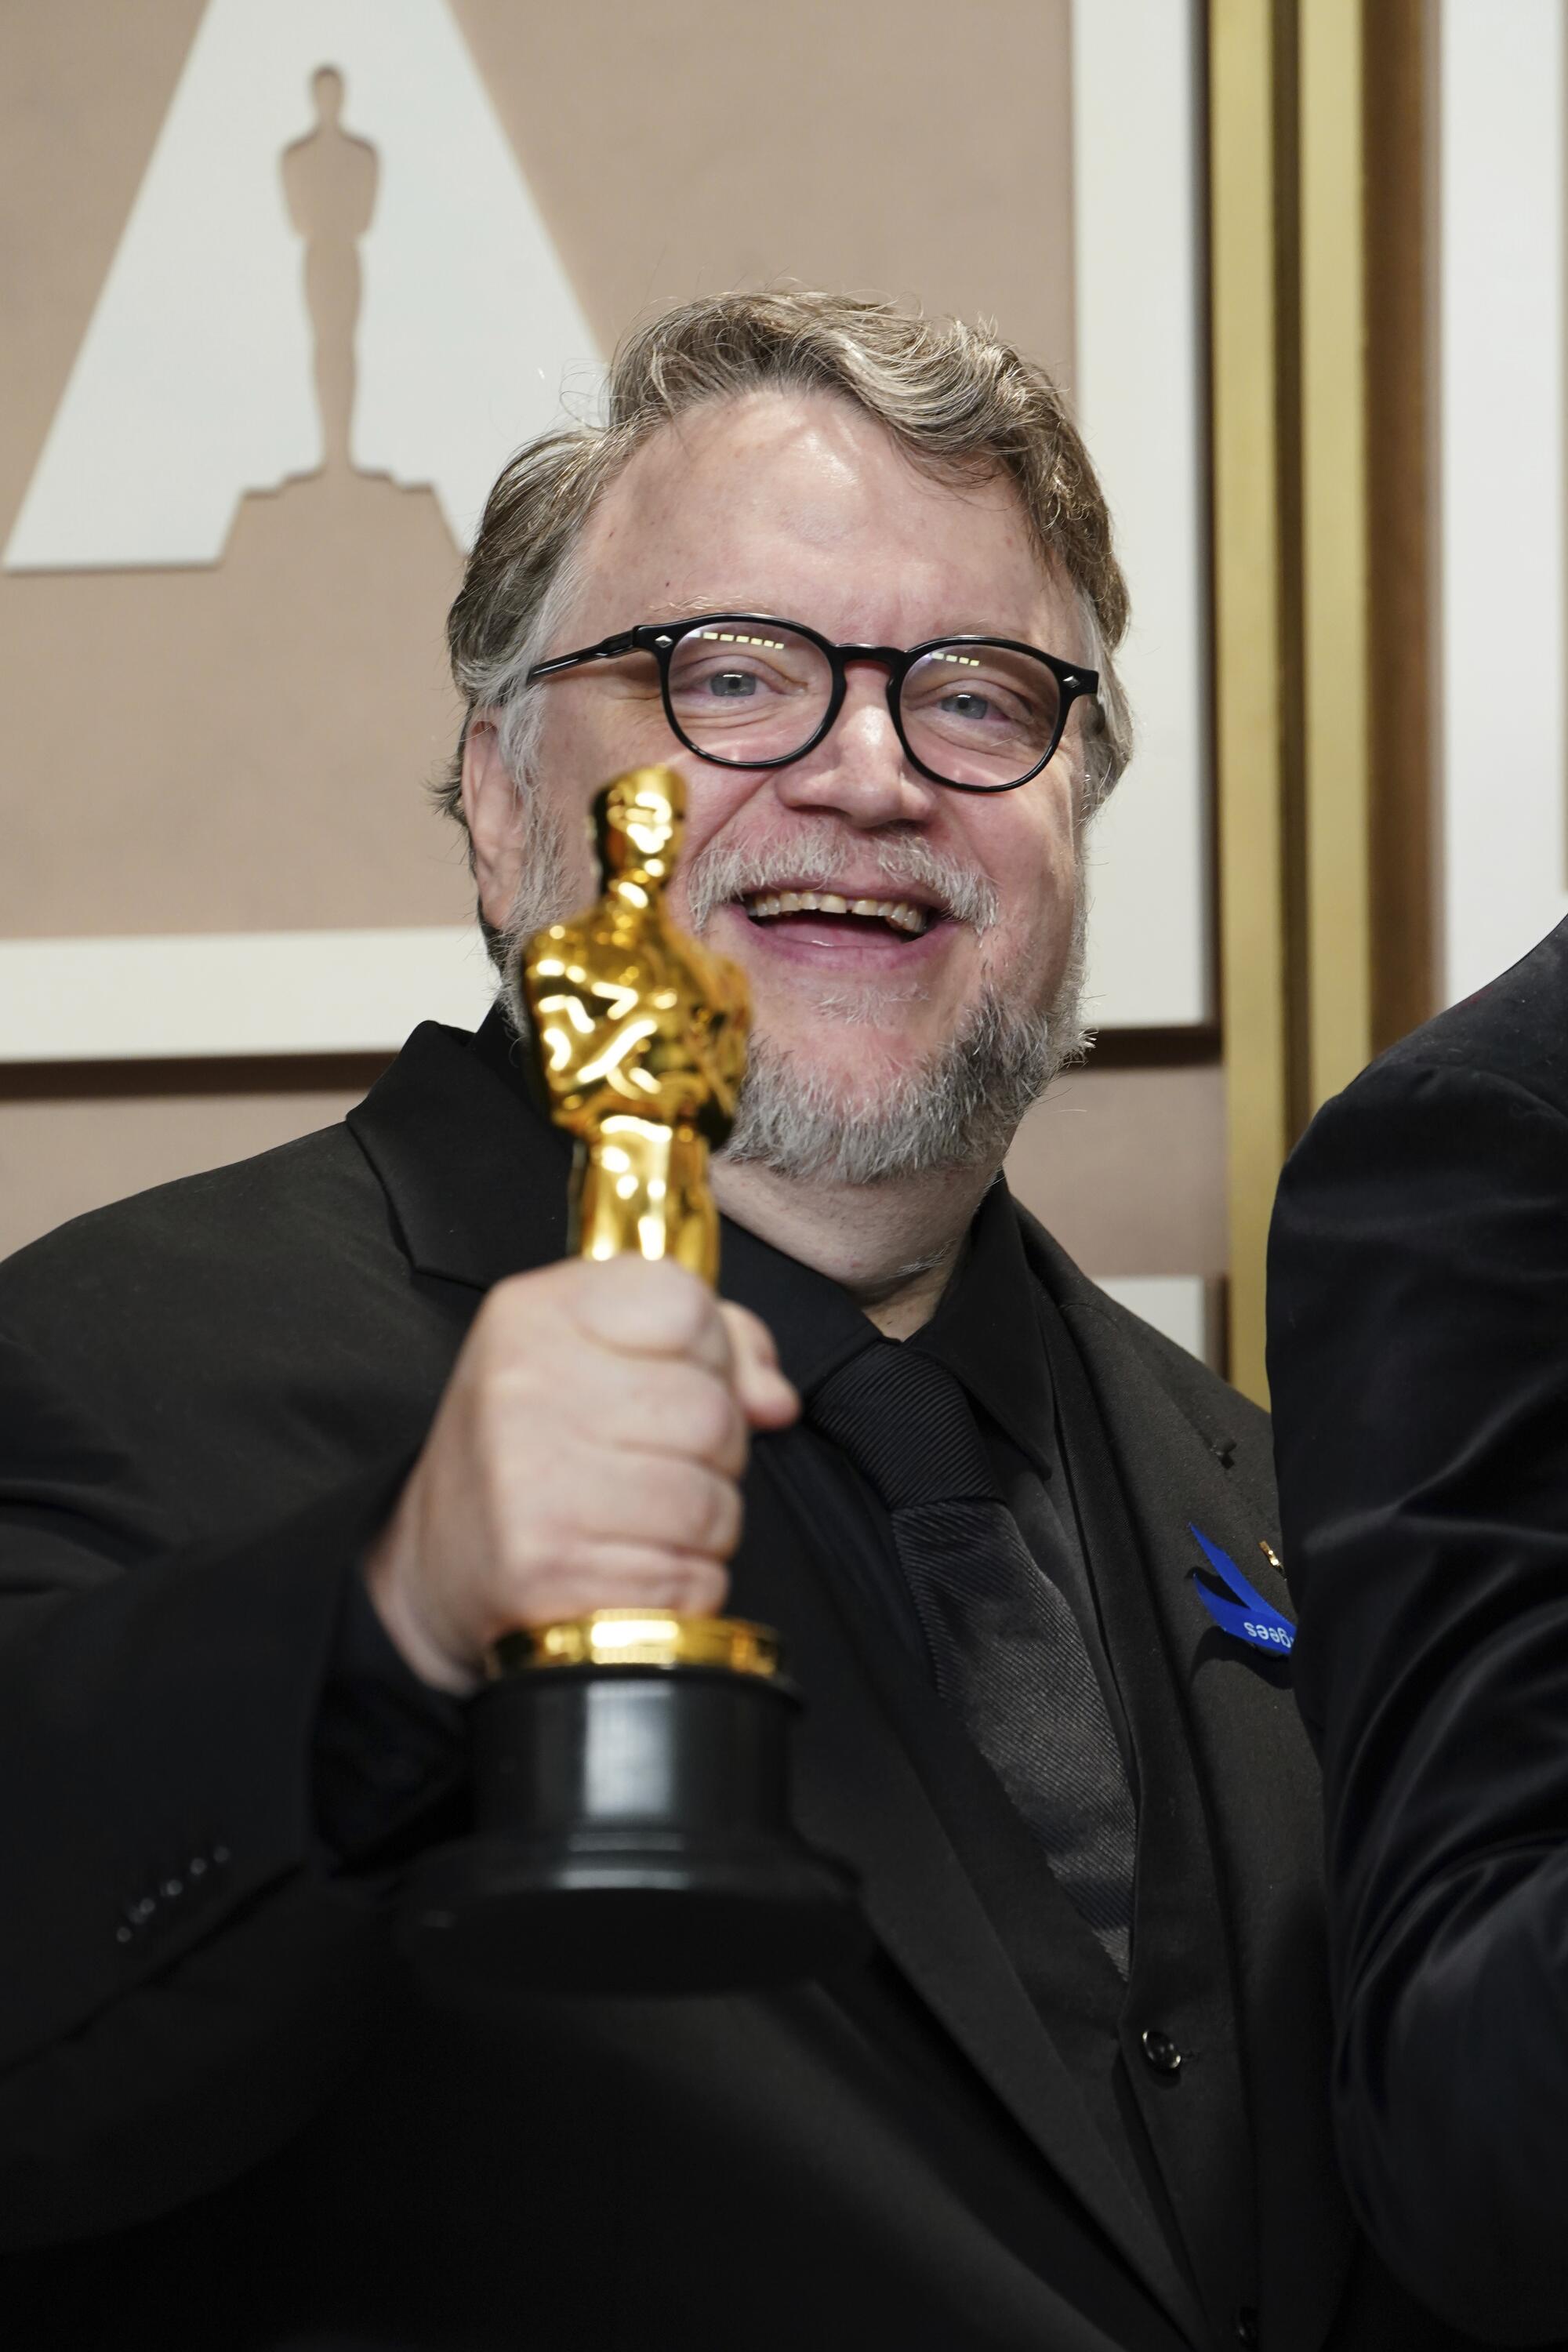 Guillermo del Toro gana el premio a cintya animada por "Guillermo del Toro's Pinocchio".